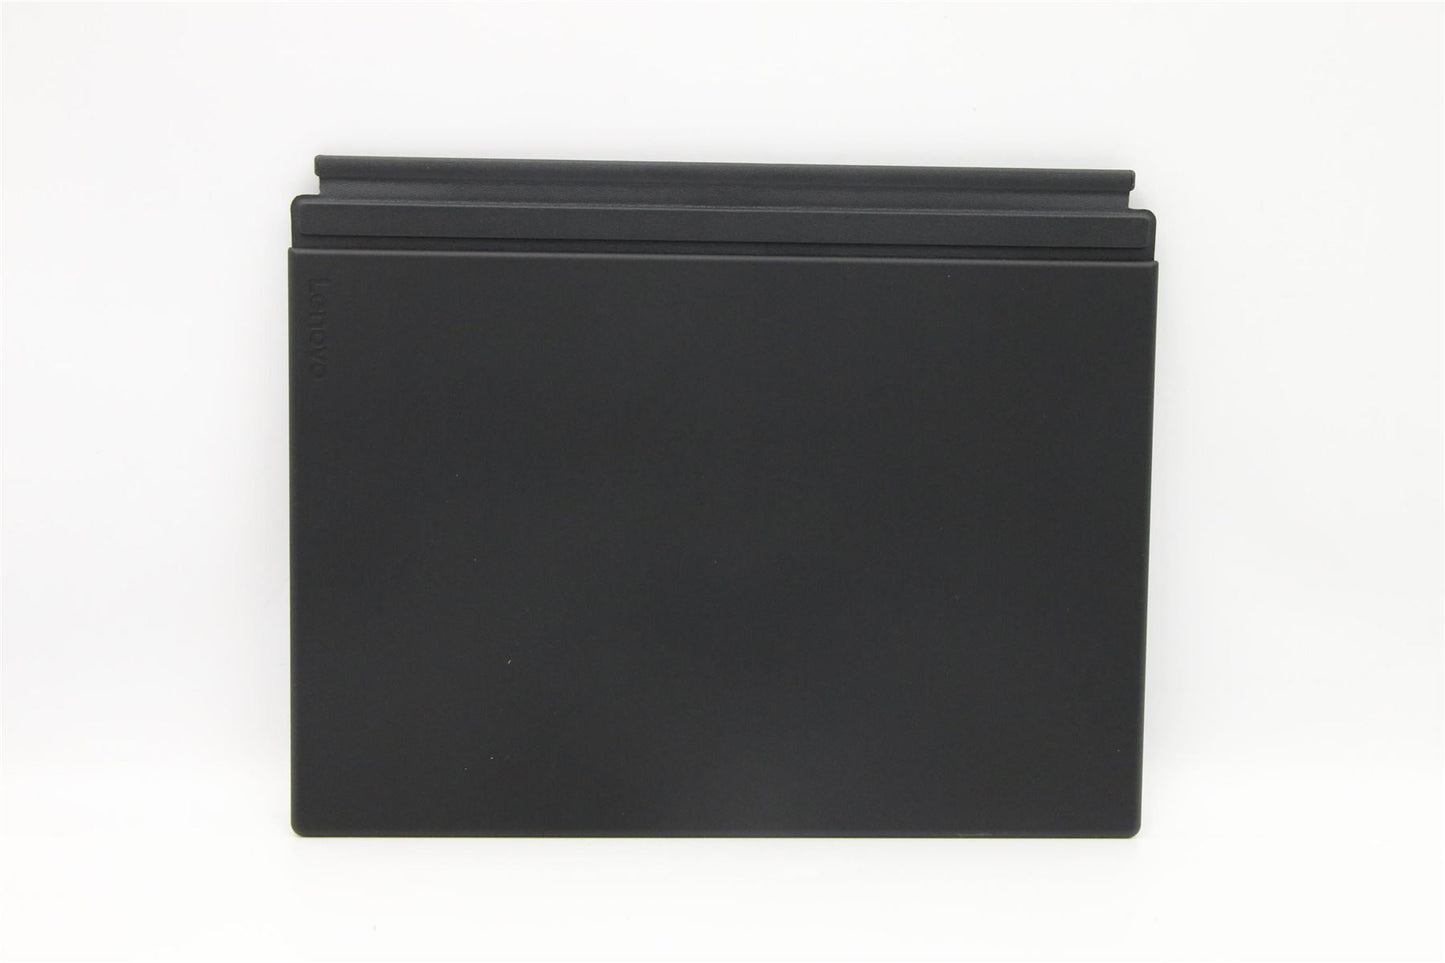 Lenovo Tablette X1 3ème Clavier Repose-poignets Japonais Noir 02HL176